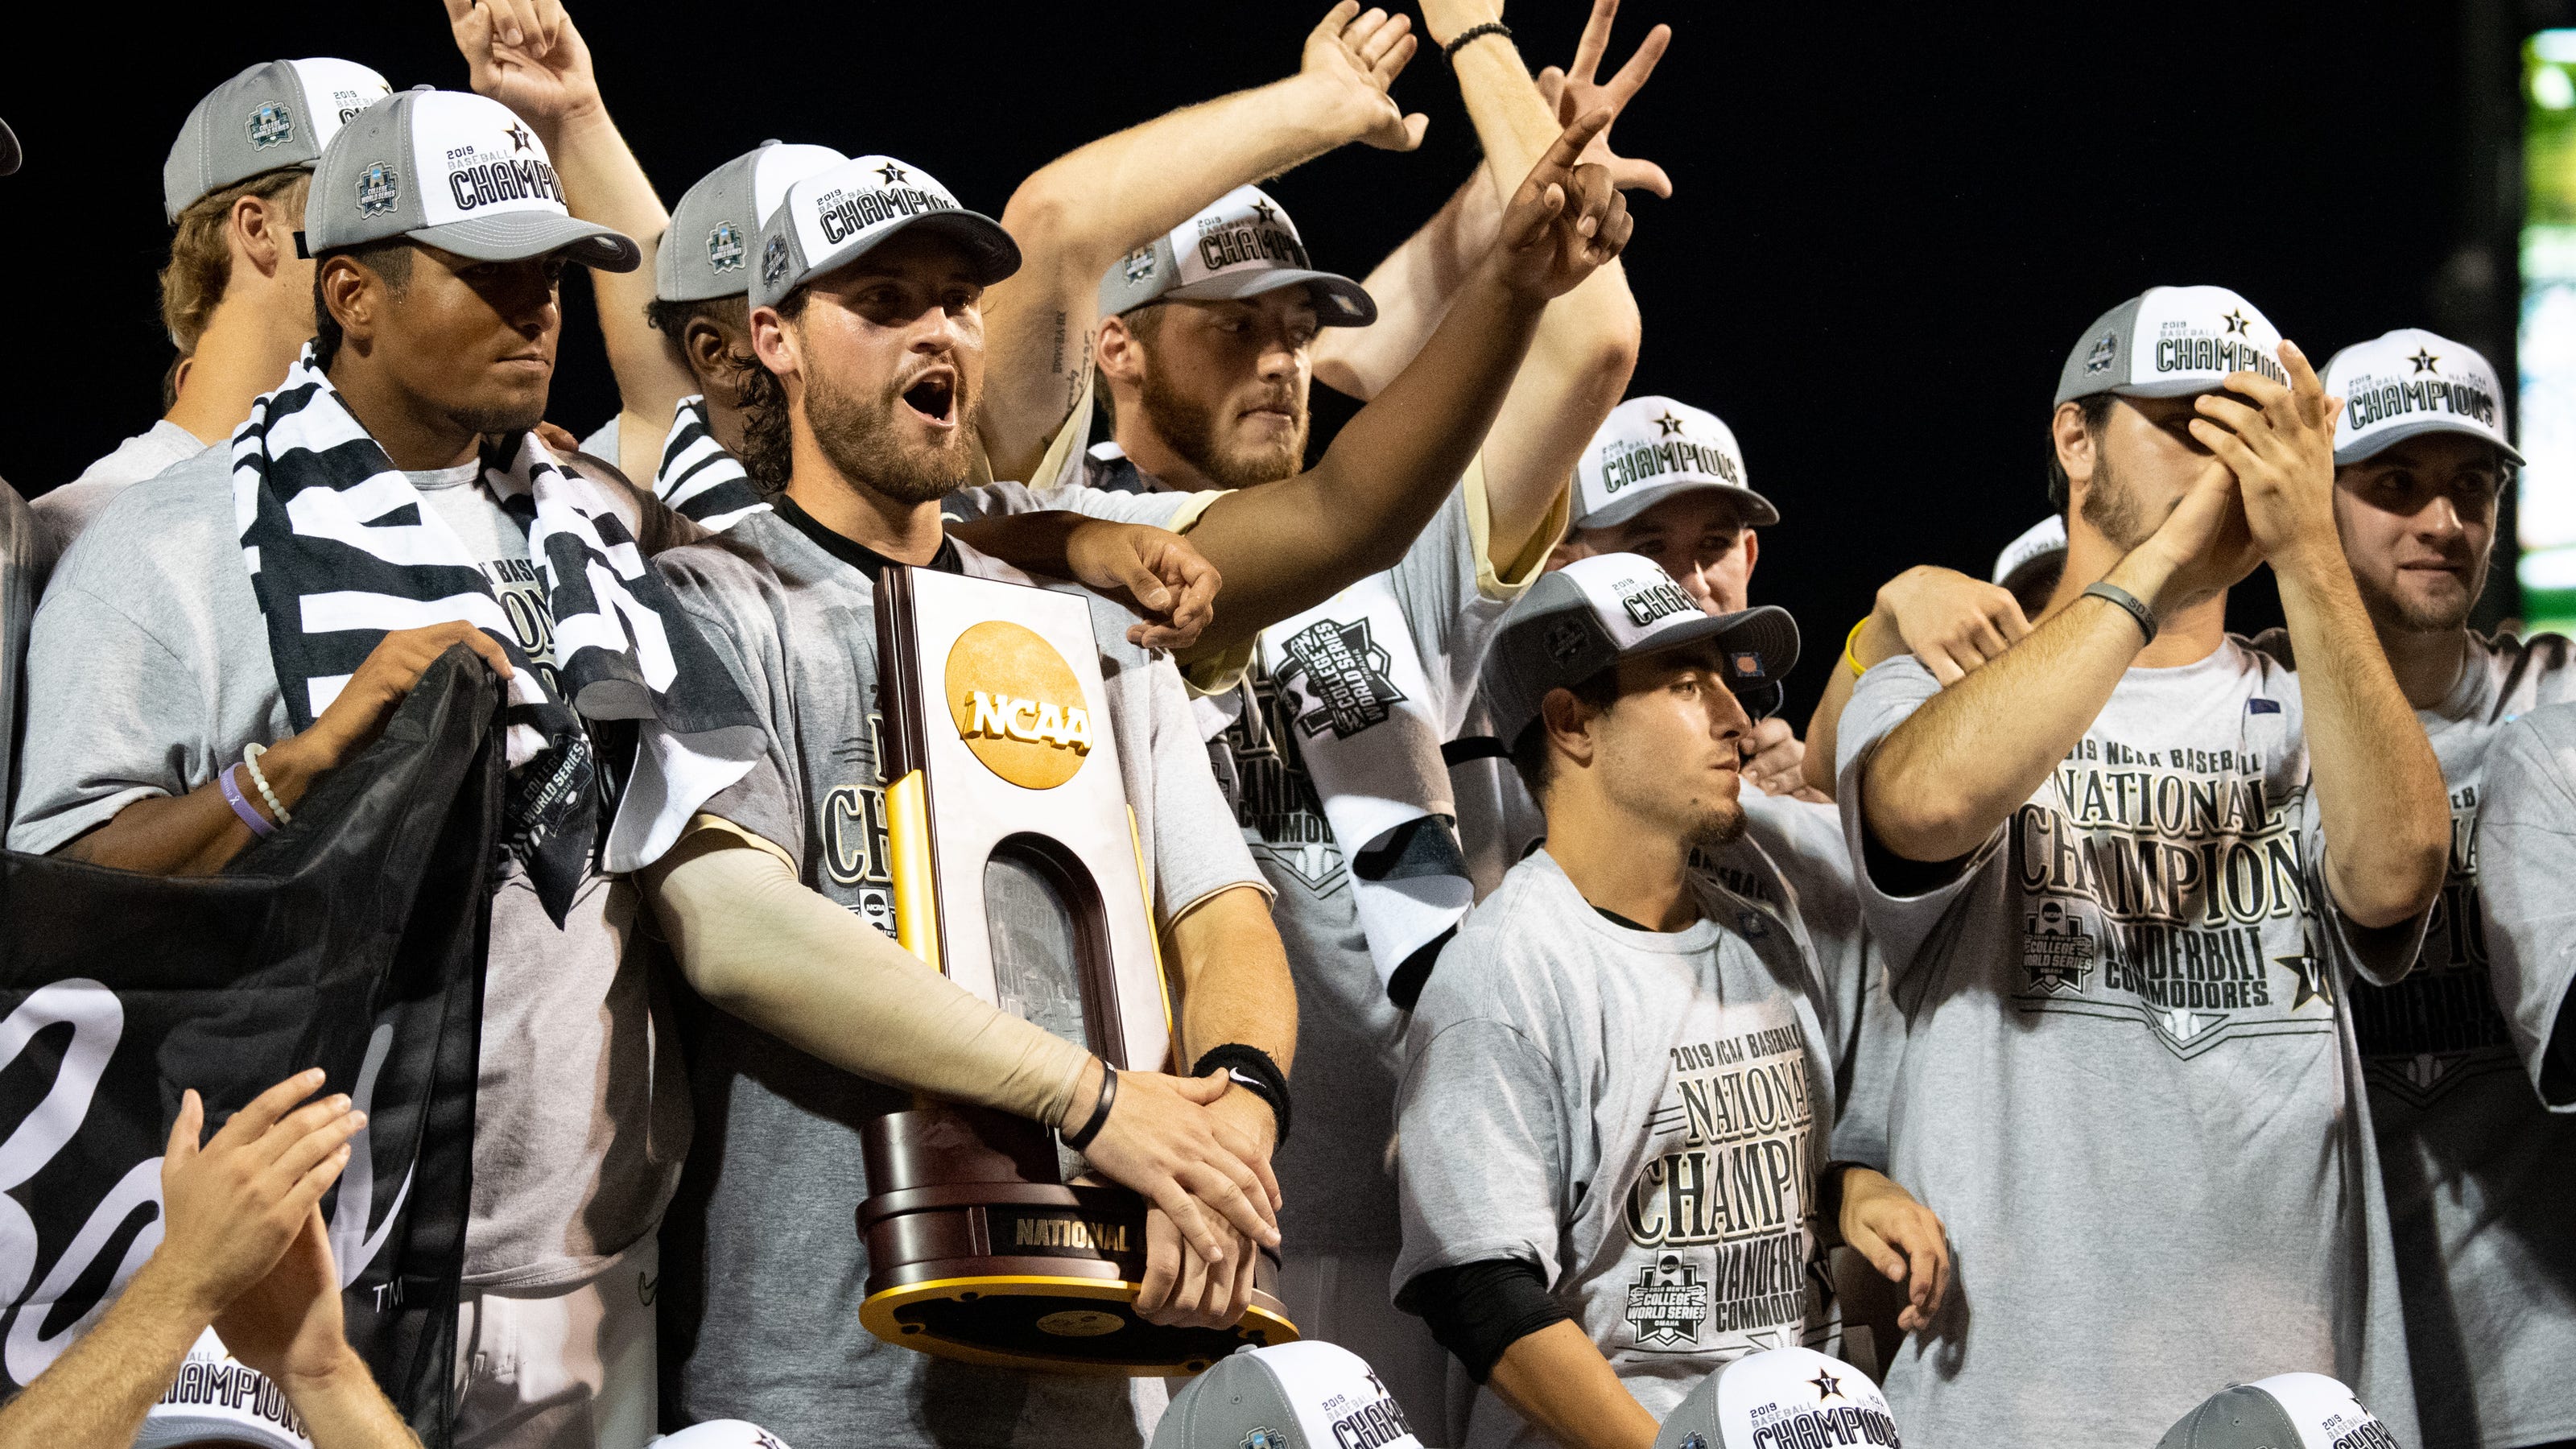 Vanderbilt baseball: Here are award winners for 2019 national title team